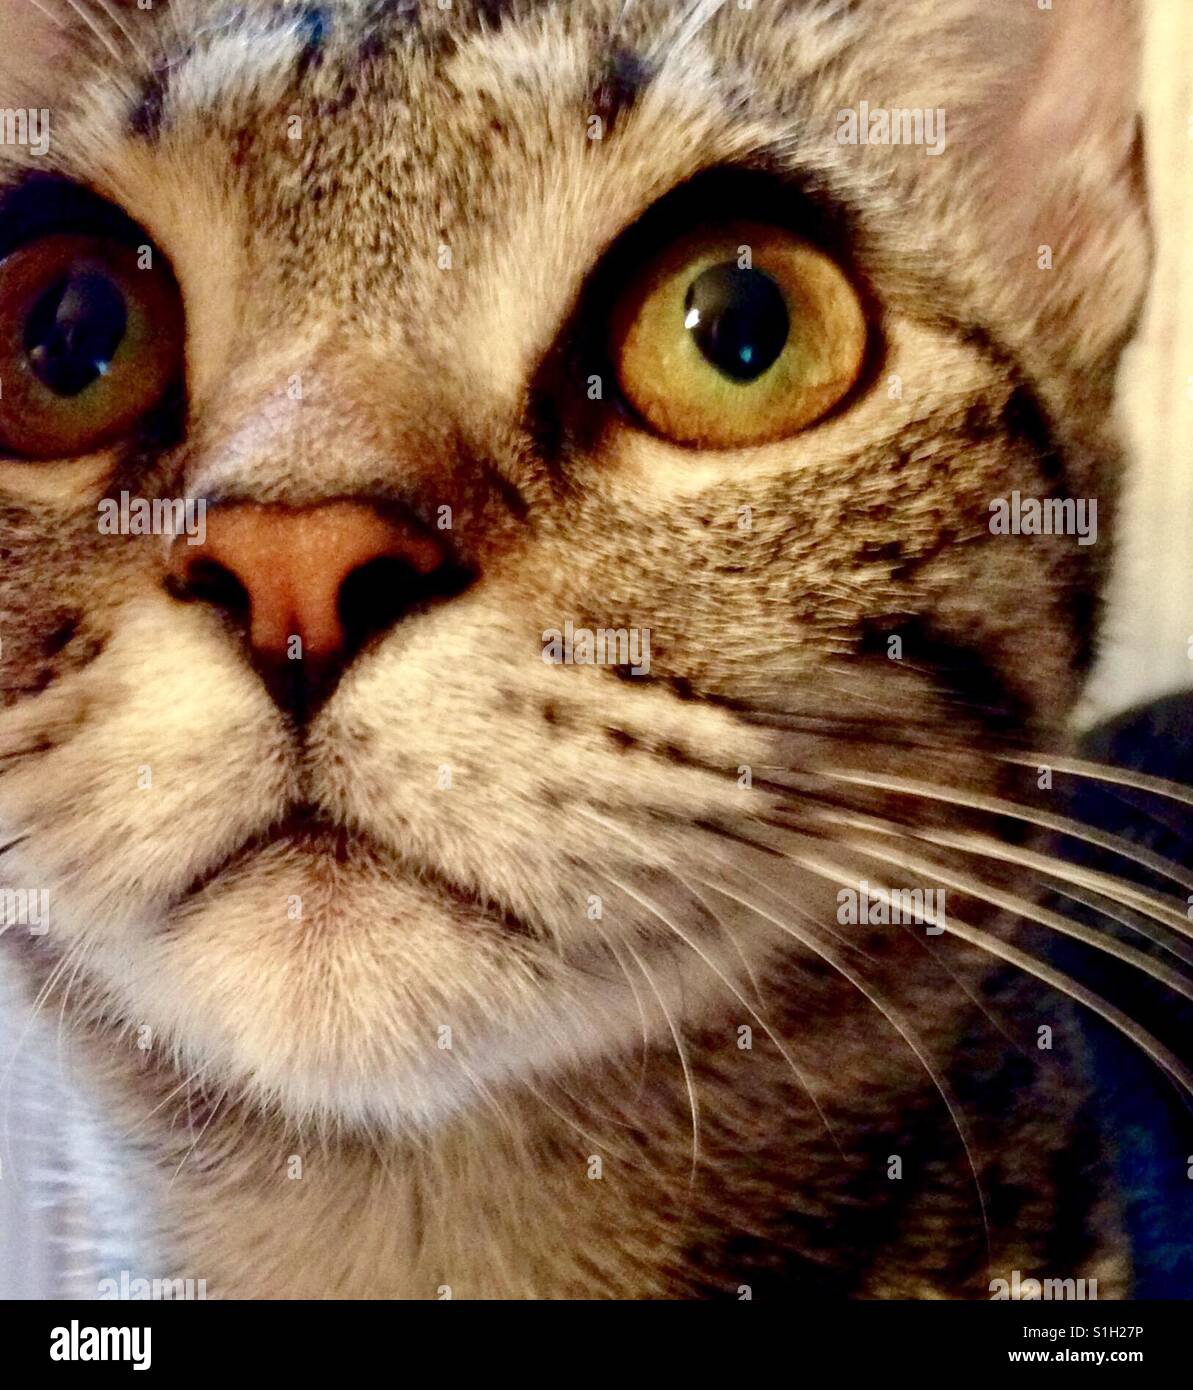 Belle branche ou American Shorthair tabby cat kitten avec de magnifiques yeux d'or Banque D'Images